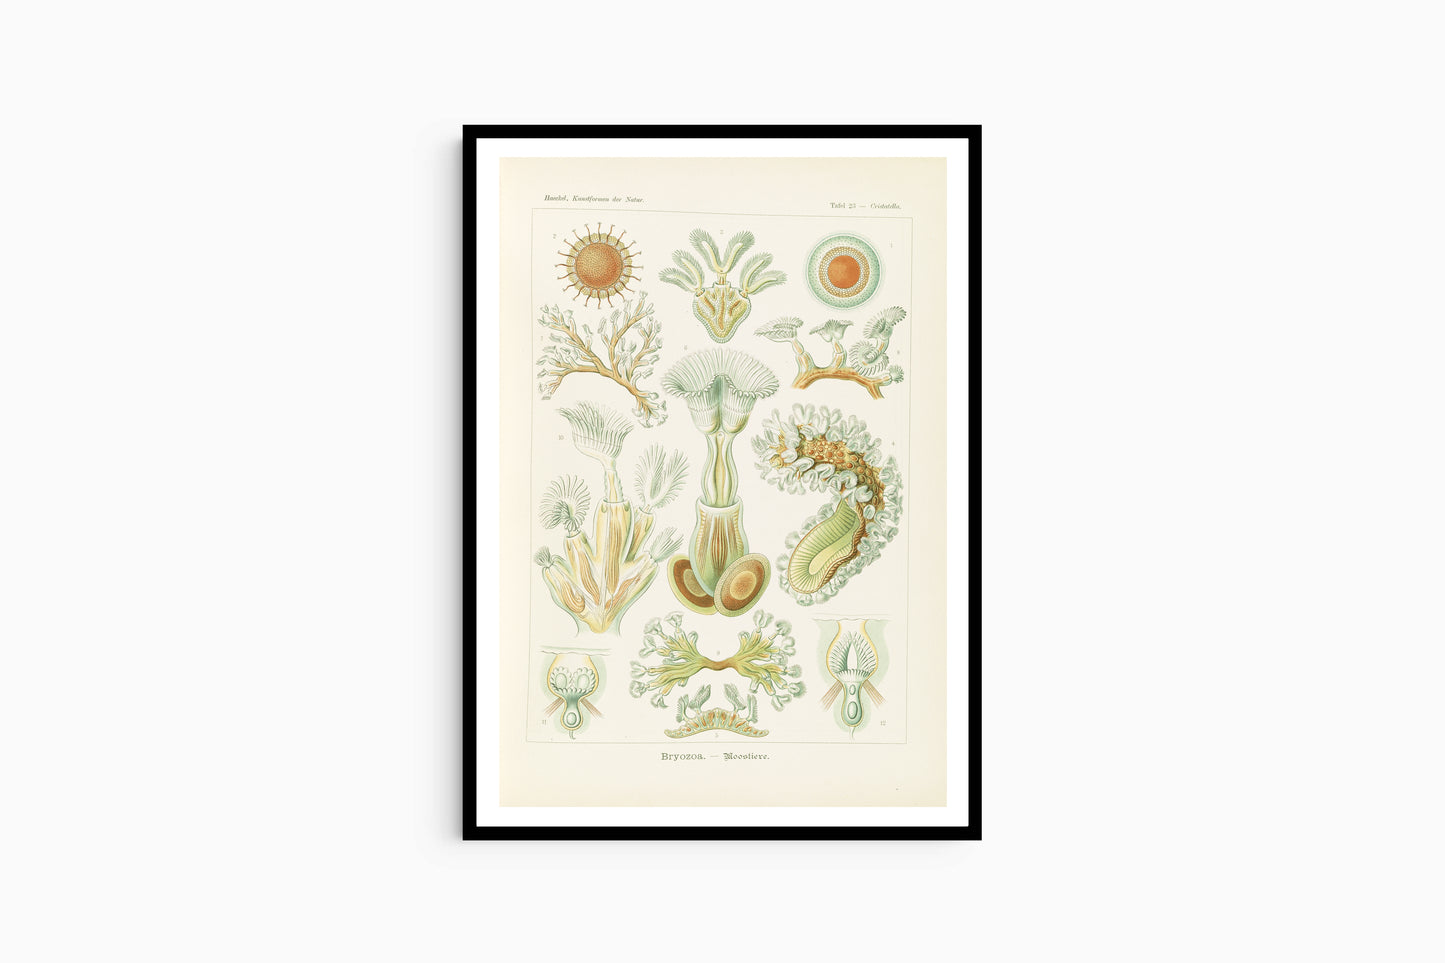 Ernst Haeckel - Bryozoa 'Moostiere'